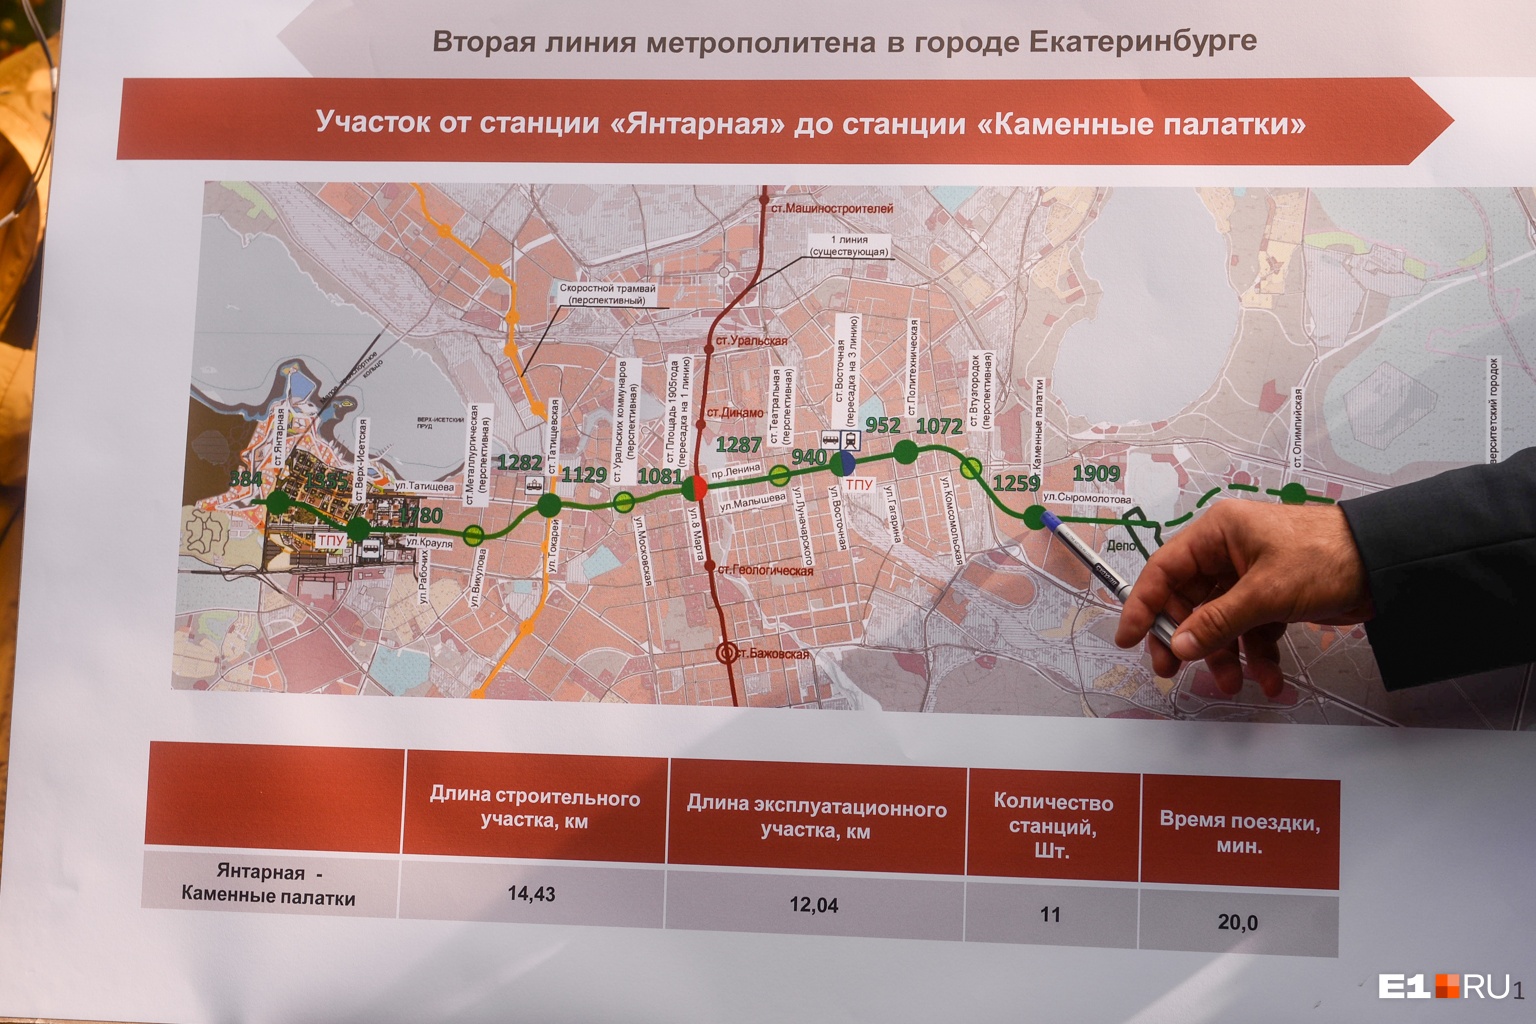 Вторая ветка метро (зеленый цвет) в настоящее время планируется от станции «Янтарная» на ВИЗе до станции «Каменные палатки». Ее хотят построить к 2025 году